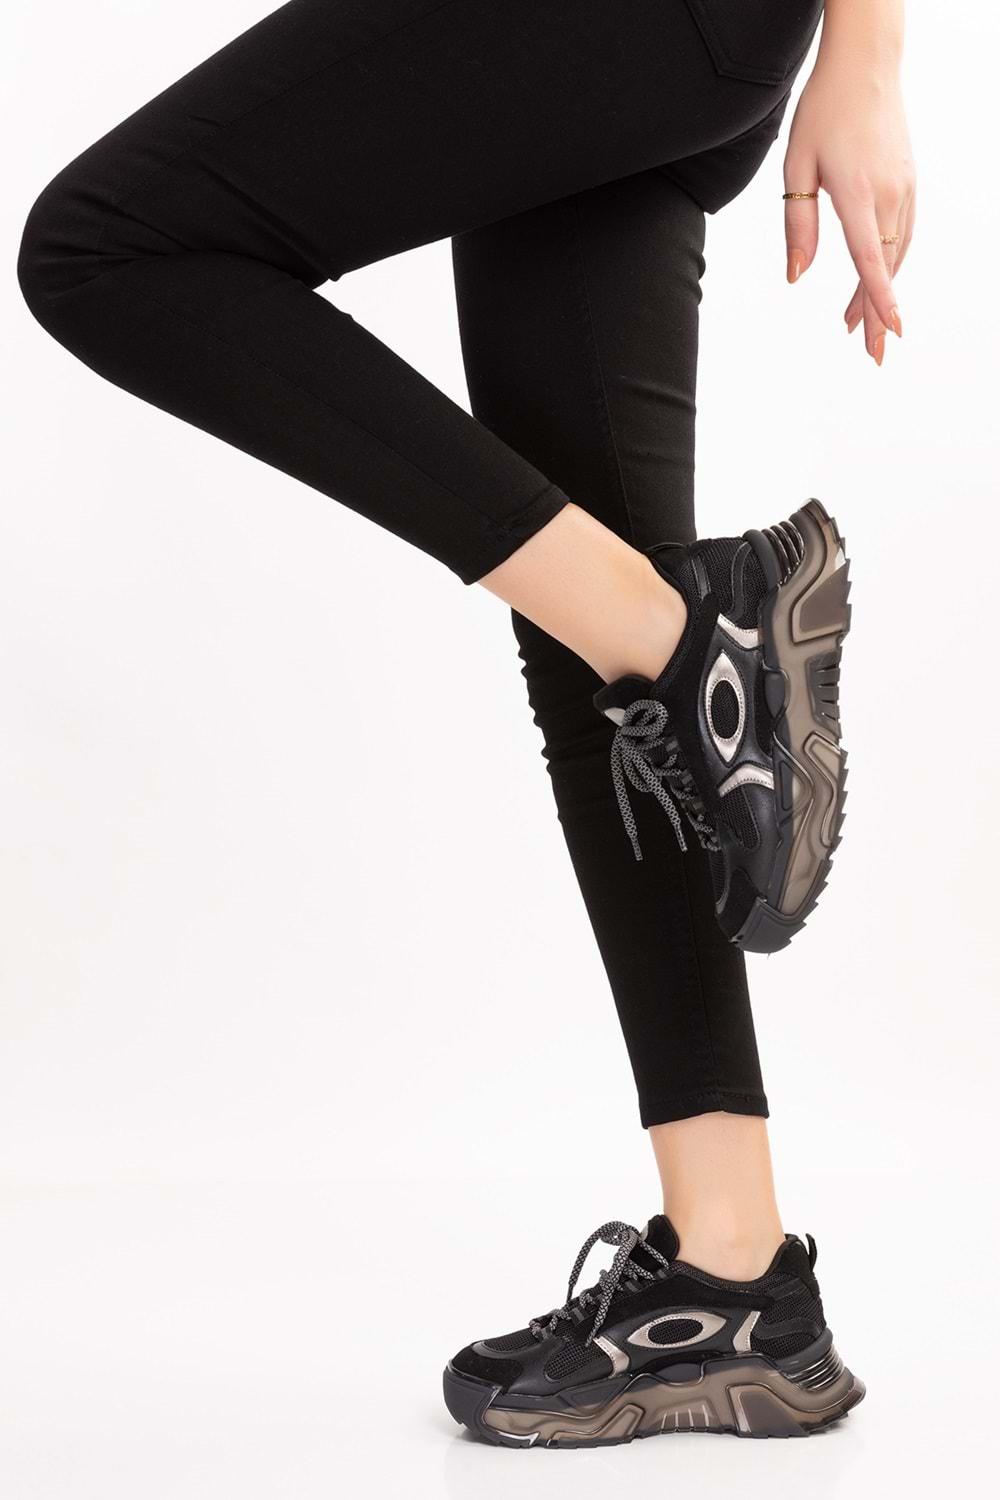 Gondol Sneakers Renkli Günlük Spor Ayakkabı mrs.60115 - Siyah - 40